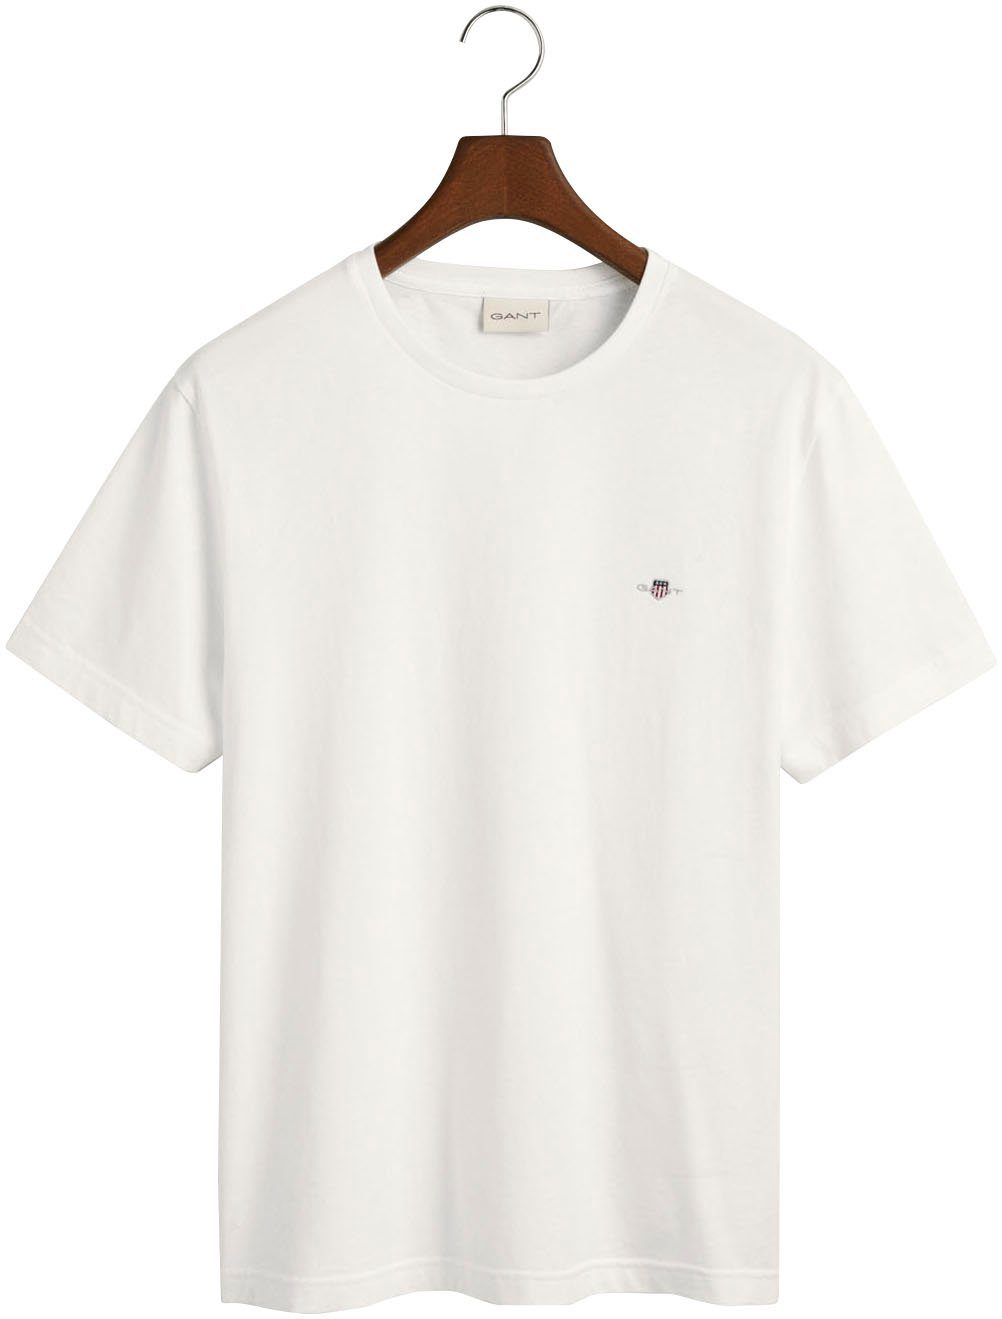 white SS T-SHIRT mit der Gant auf T-Shirt Brust SHIELD Logostickerei REG